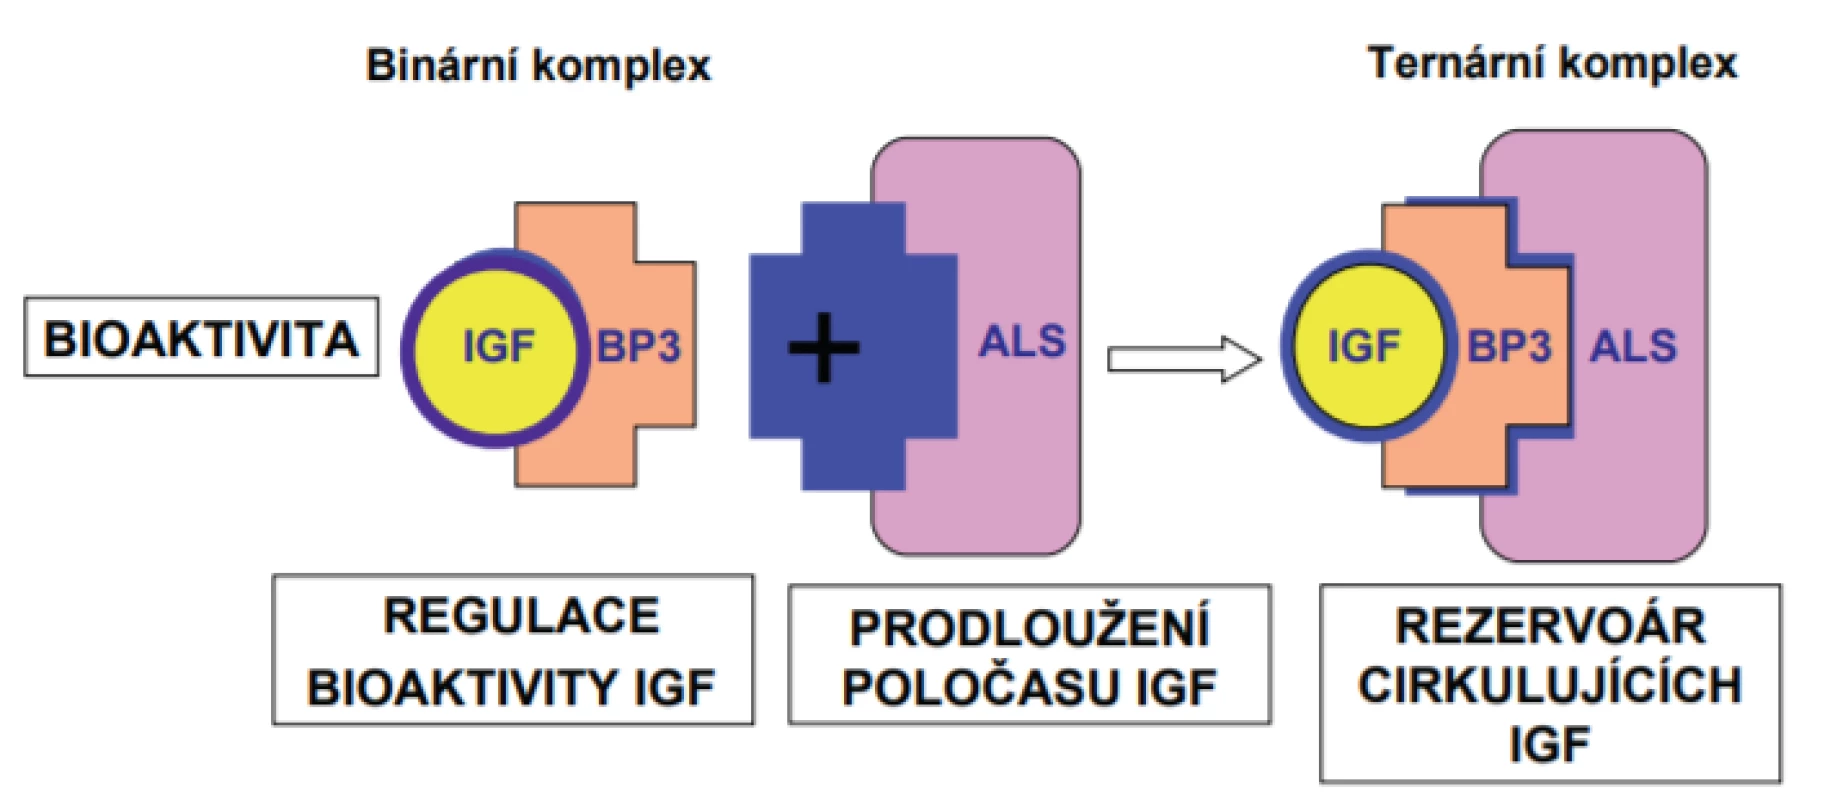 IGF-1 a IGF-2 cirkulují v krvi v podobě ternárního komplexu s vazebným proteinem (převážně vazebným proteinem 3. typu; IGFBP-3) a s acidolabilní podjednotkou (ALS). Tato vazba
prodlužuje poločas jejich působení a zajišťuje jejich rezervoár v krvi.